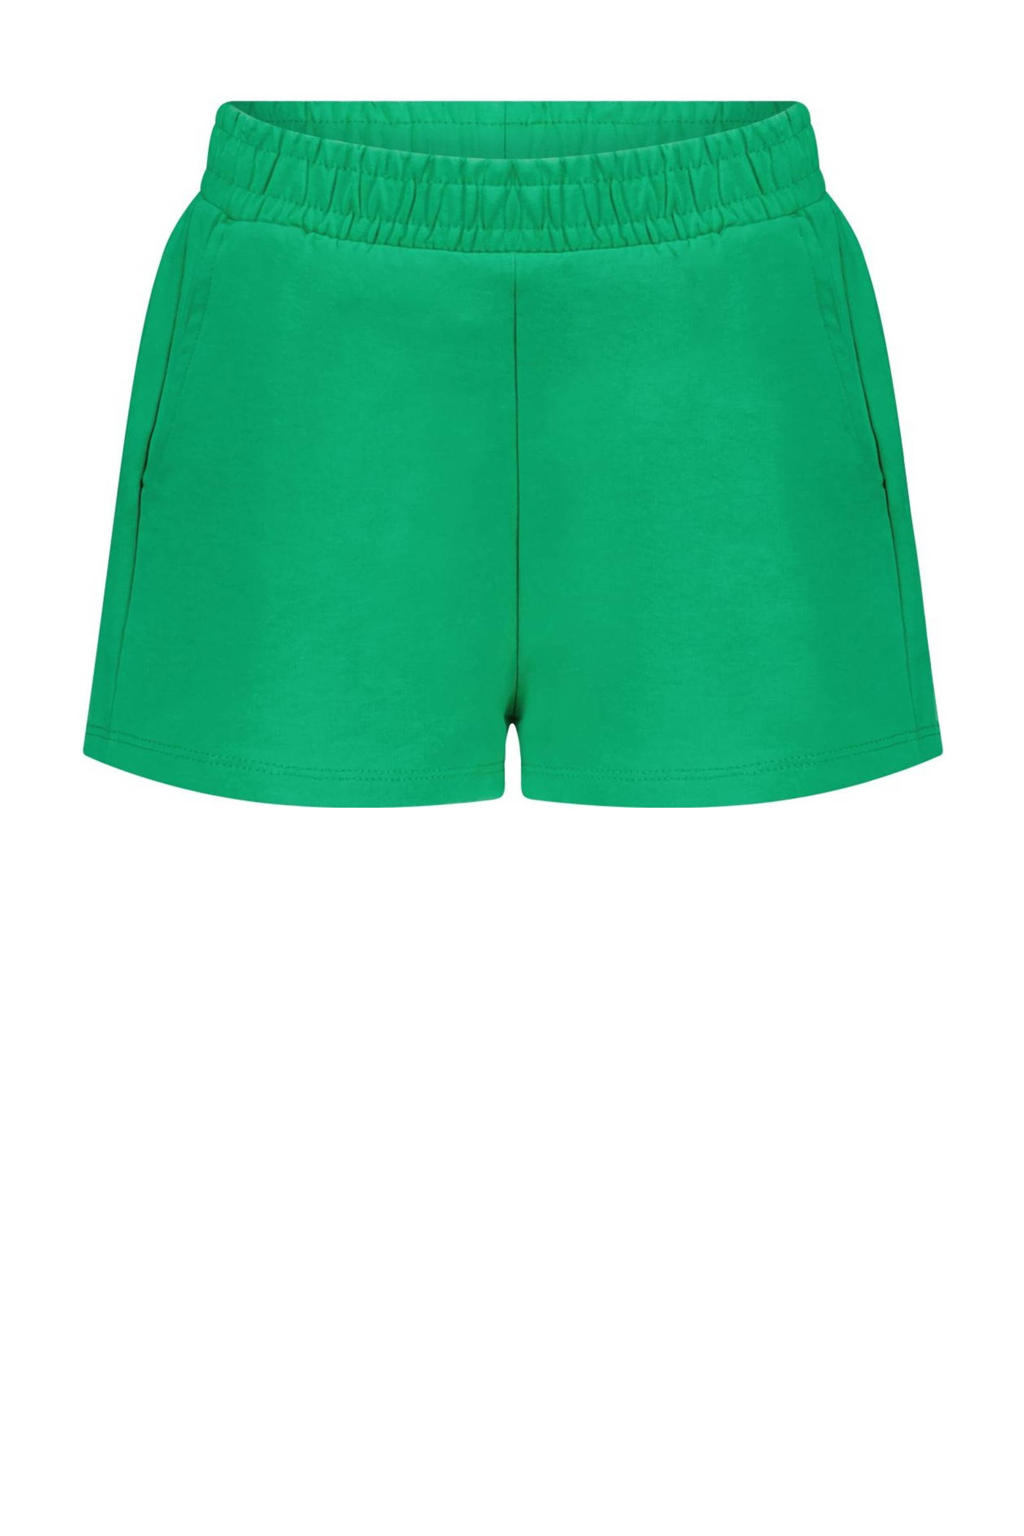 Groene meisjes Moodstreet short van duurzaam stretchkatoen met regular waist en elastische tailleband